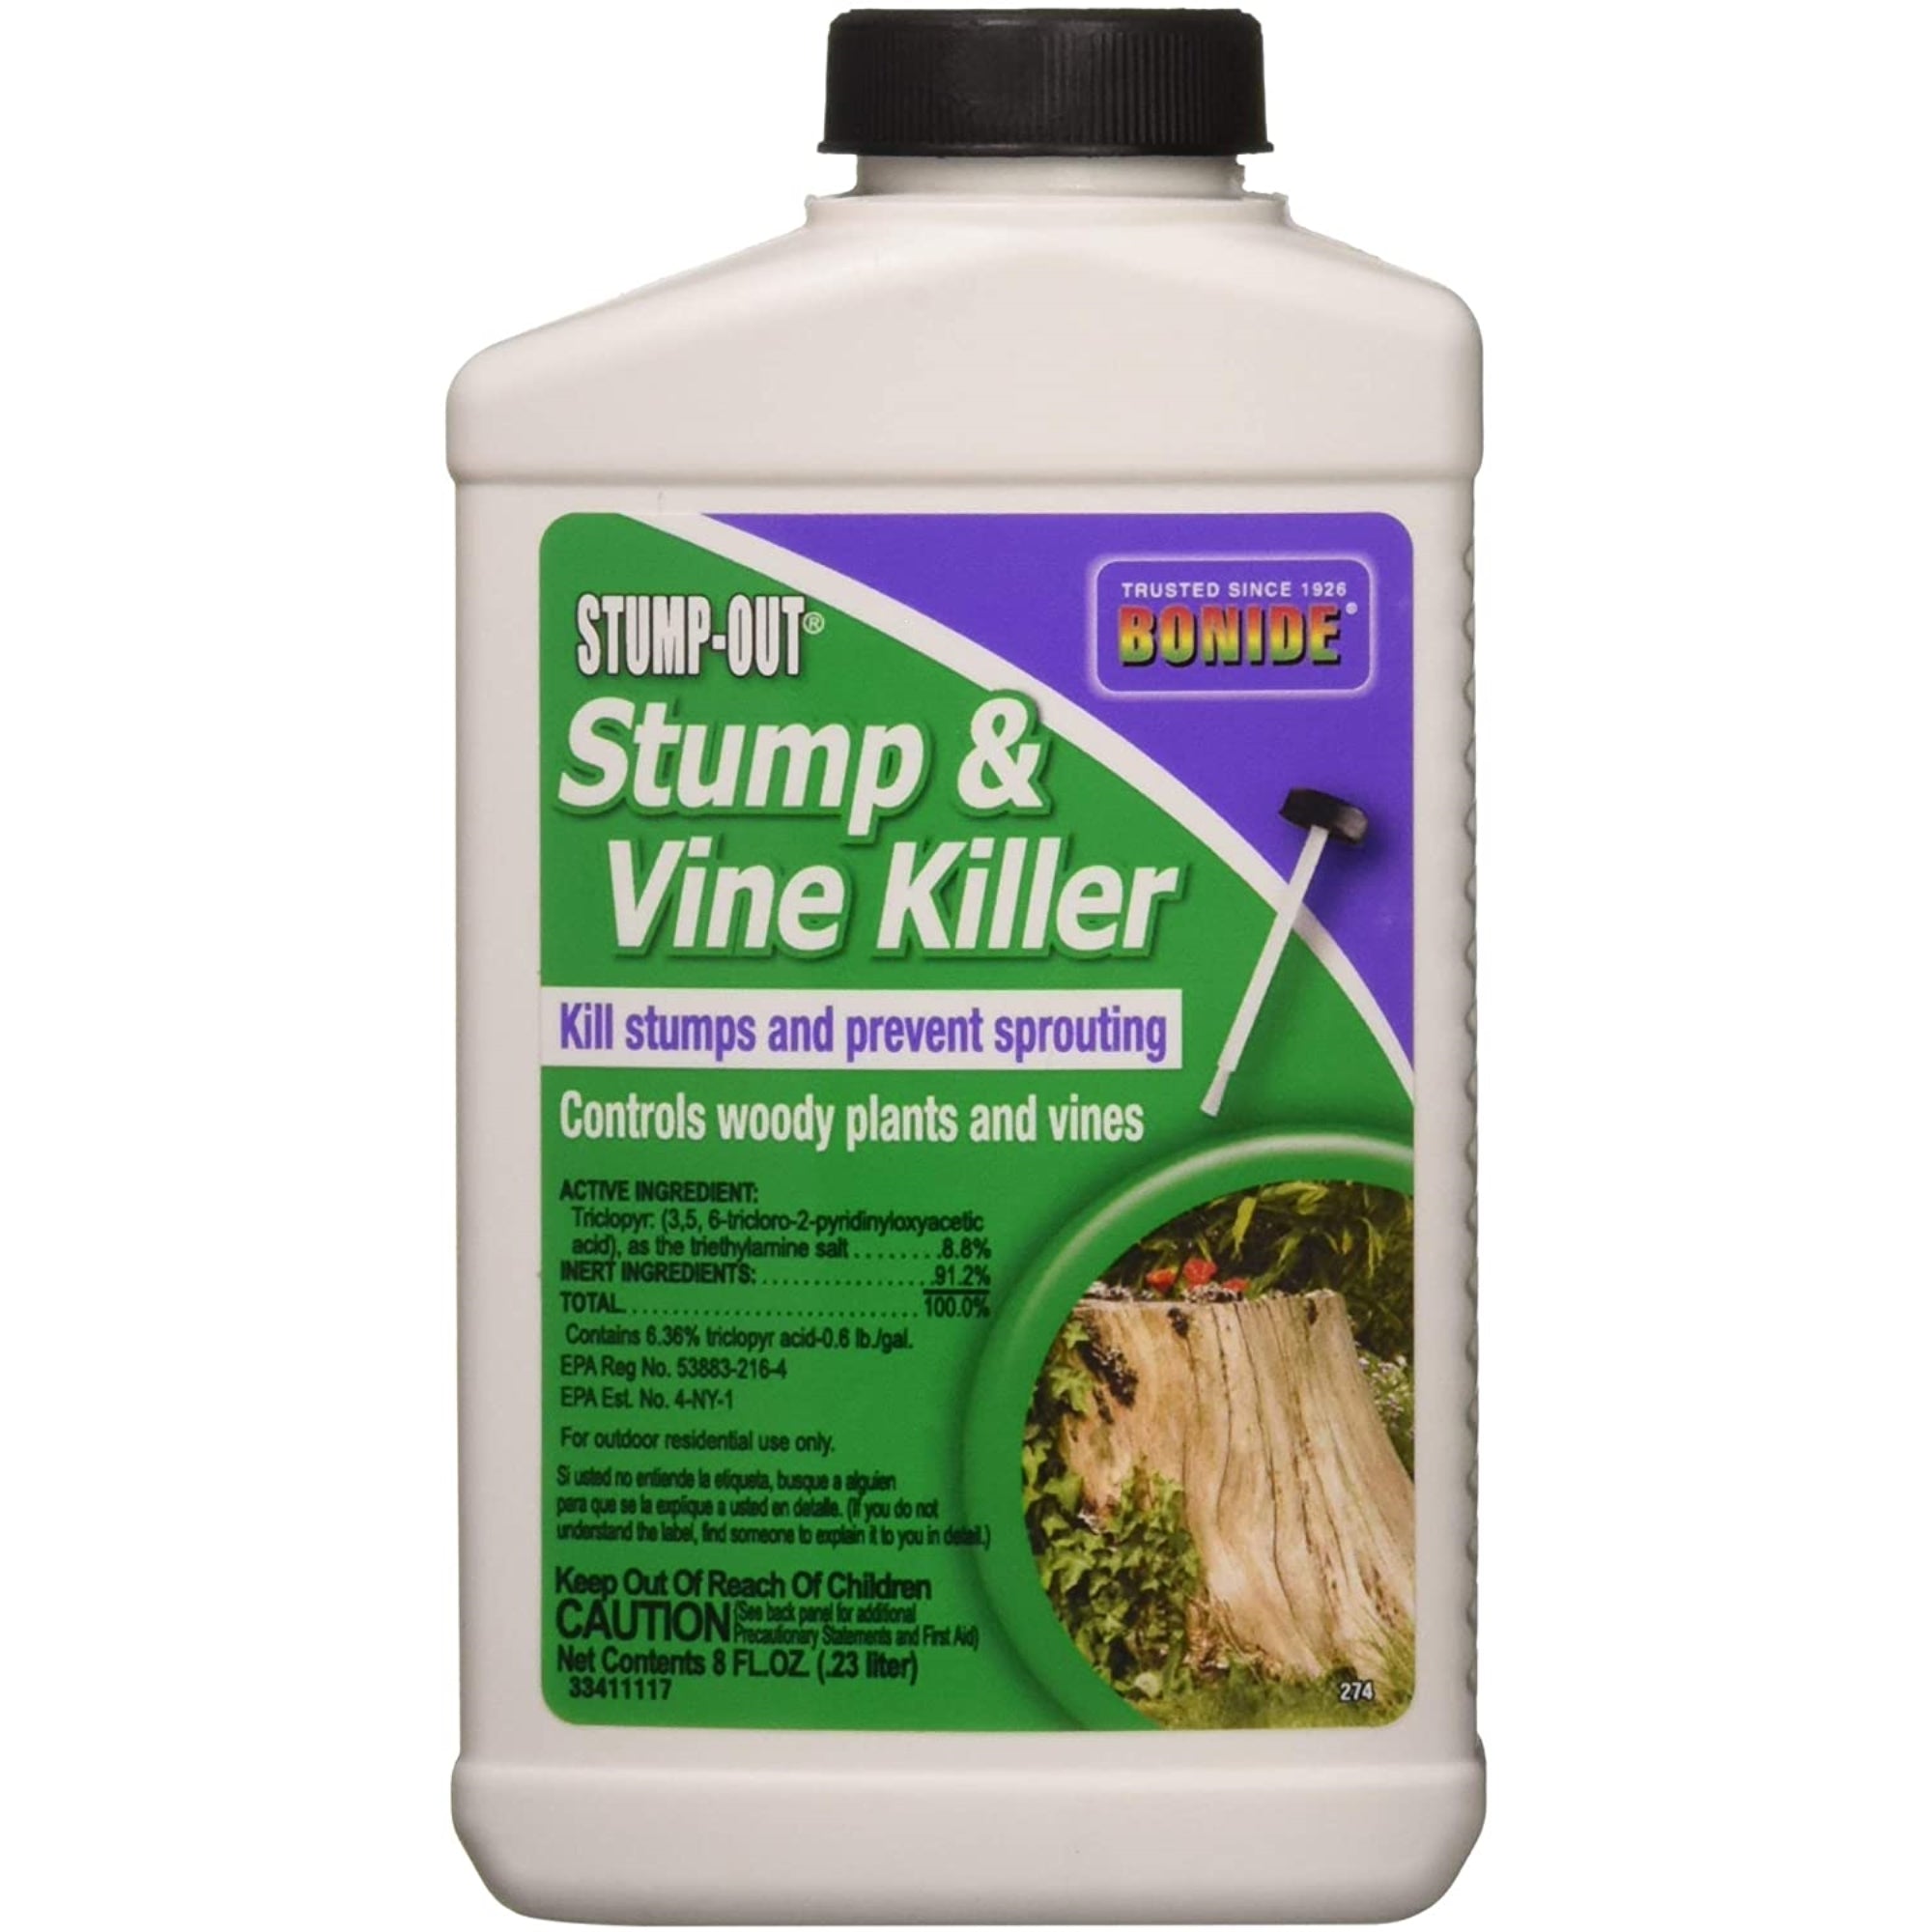 Bonide 274 8 oz Stump-Out Stump & Vine Killer Concentrate